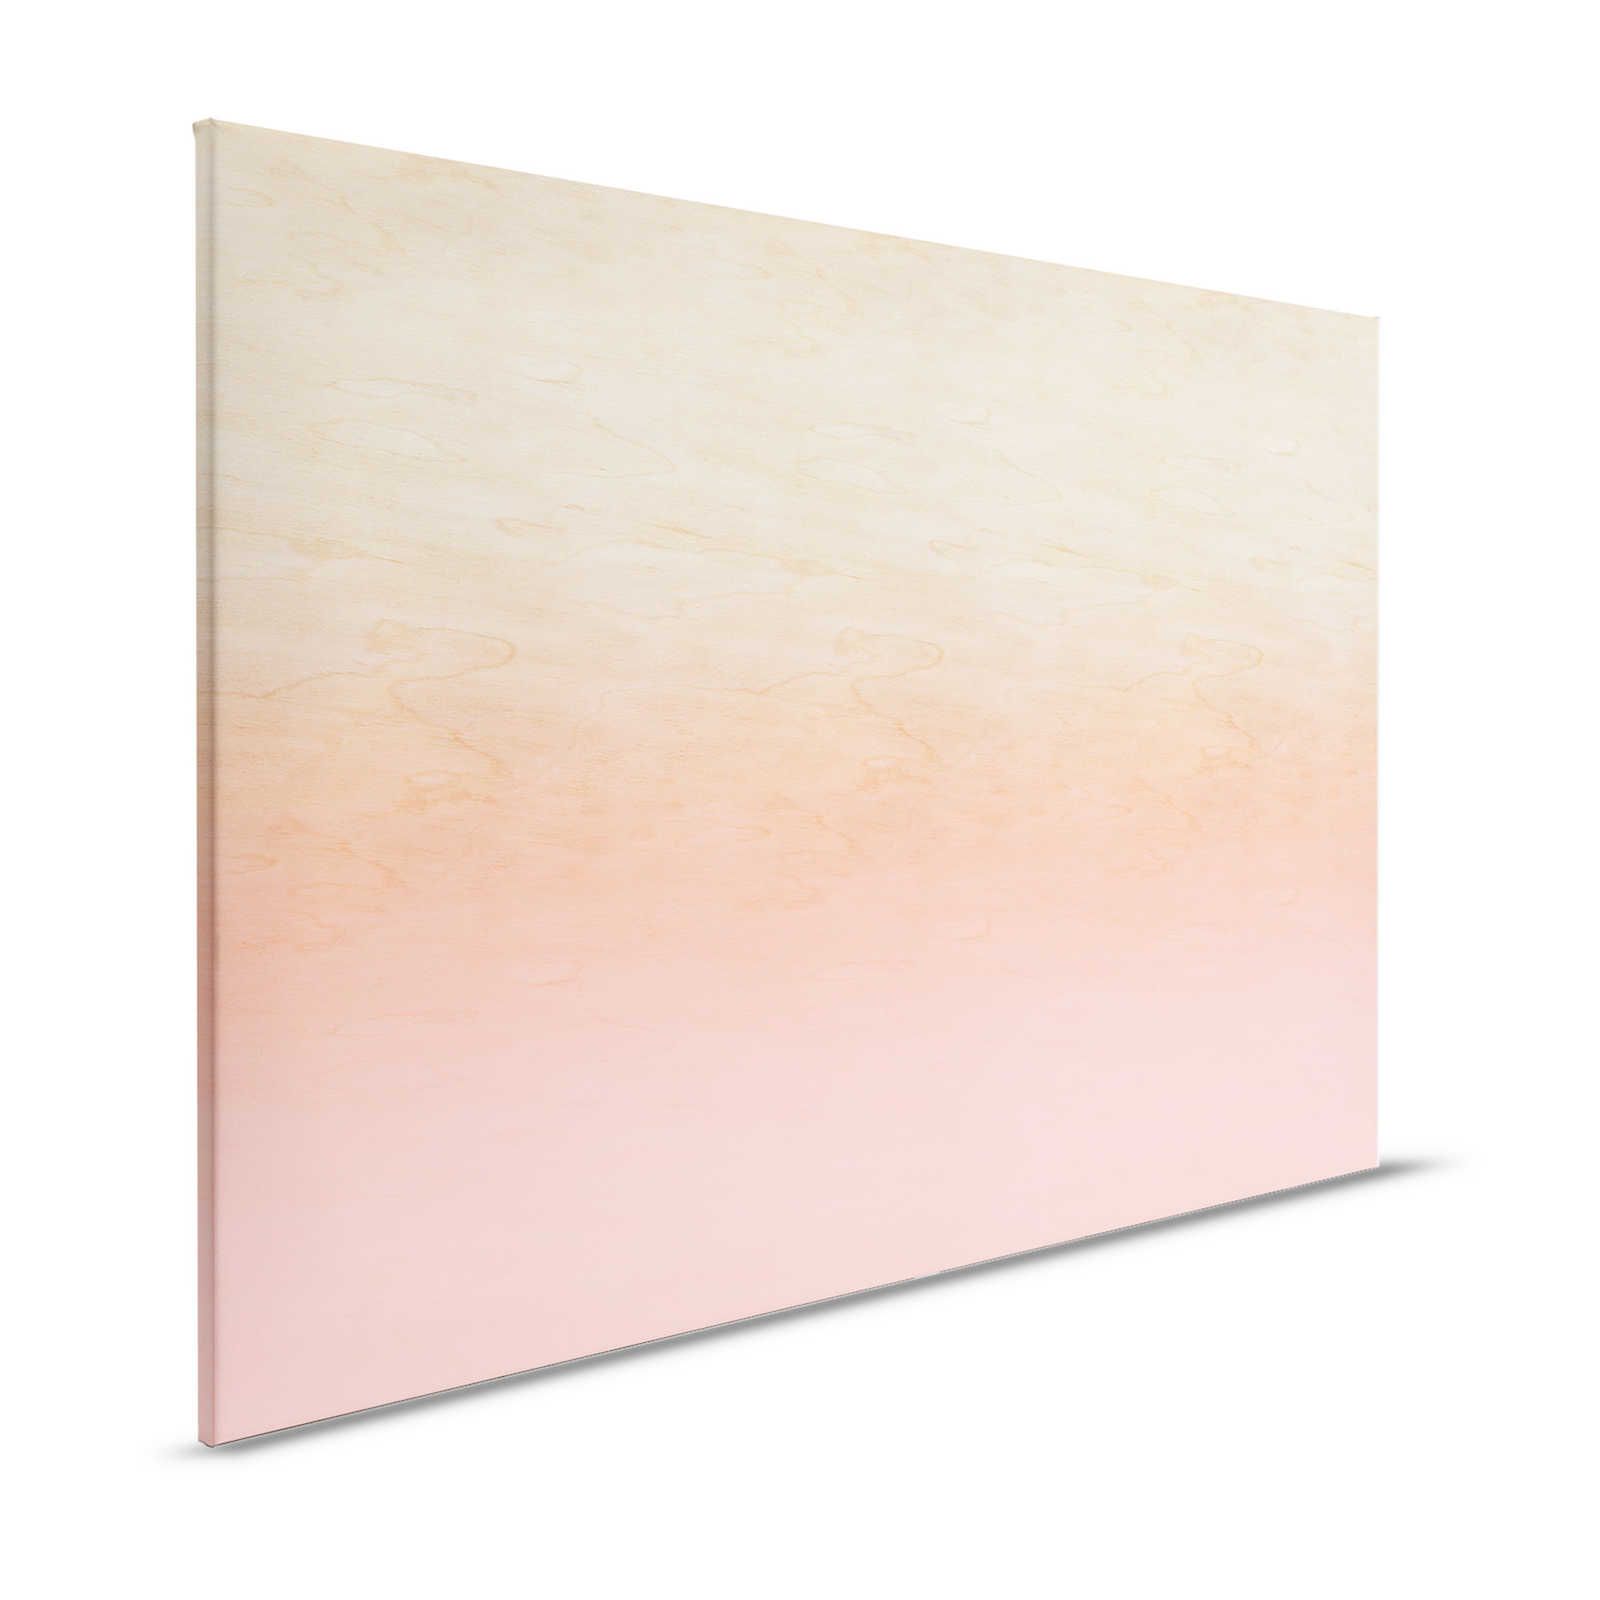 Workshop 2 - Pittura su tela Effetto Ombre rosa e venature del legno - 1,20 m x 0,80 m
